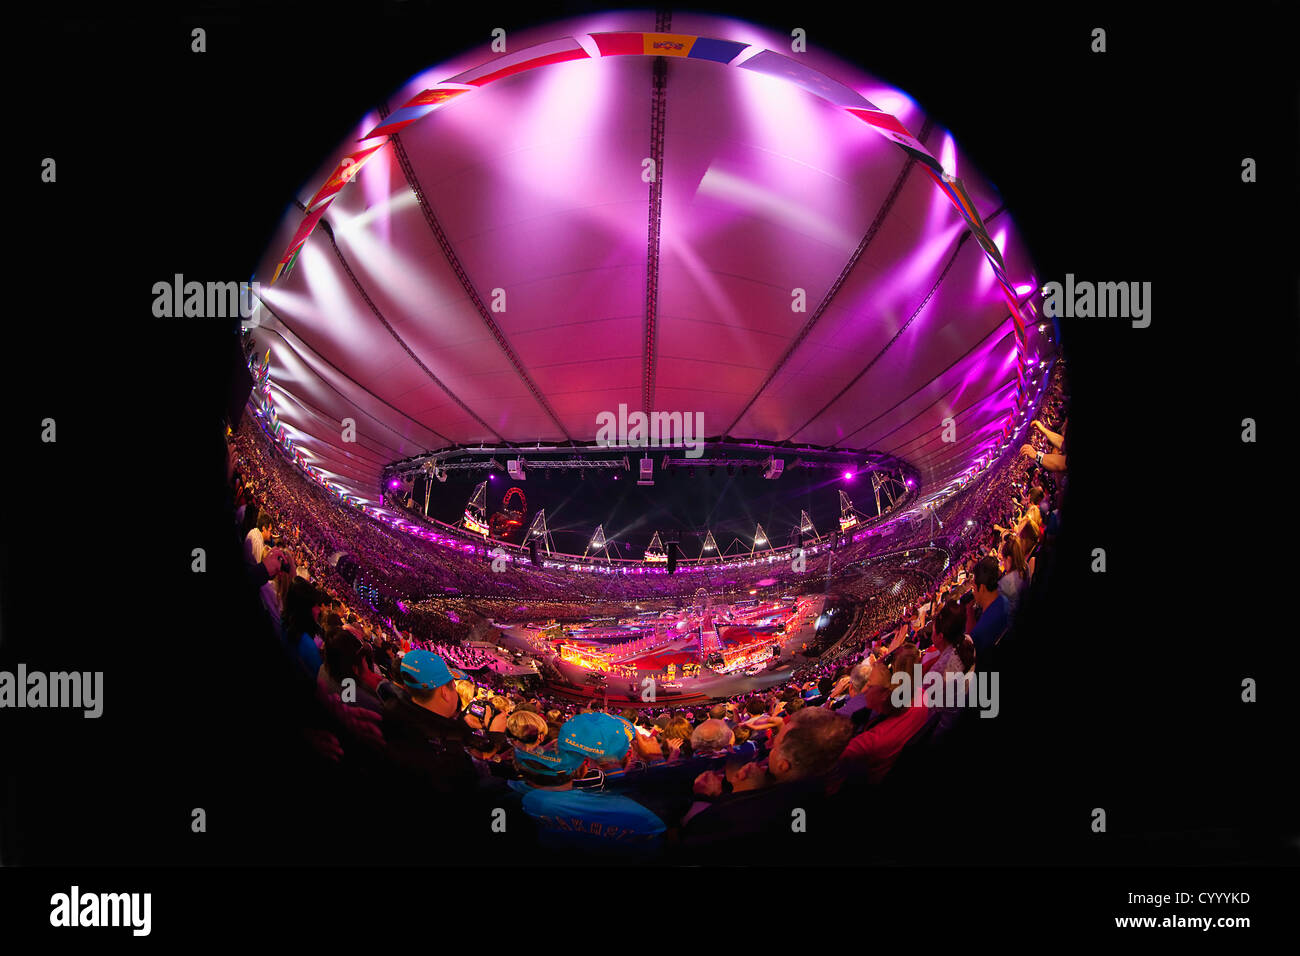 Inghilterra, Londra, Stratford, obiettivo Fisheye vista di giochi olimpici cerimonia di chiusura con il pubblico in Stadium e luce rosa display. Foto Stock